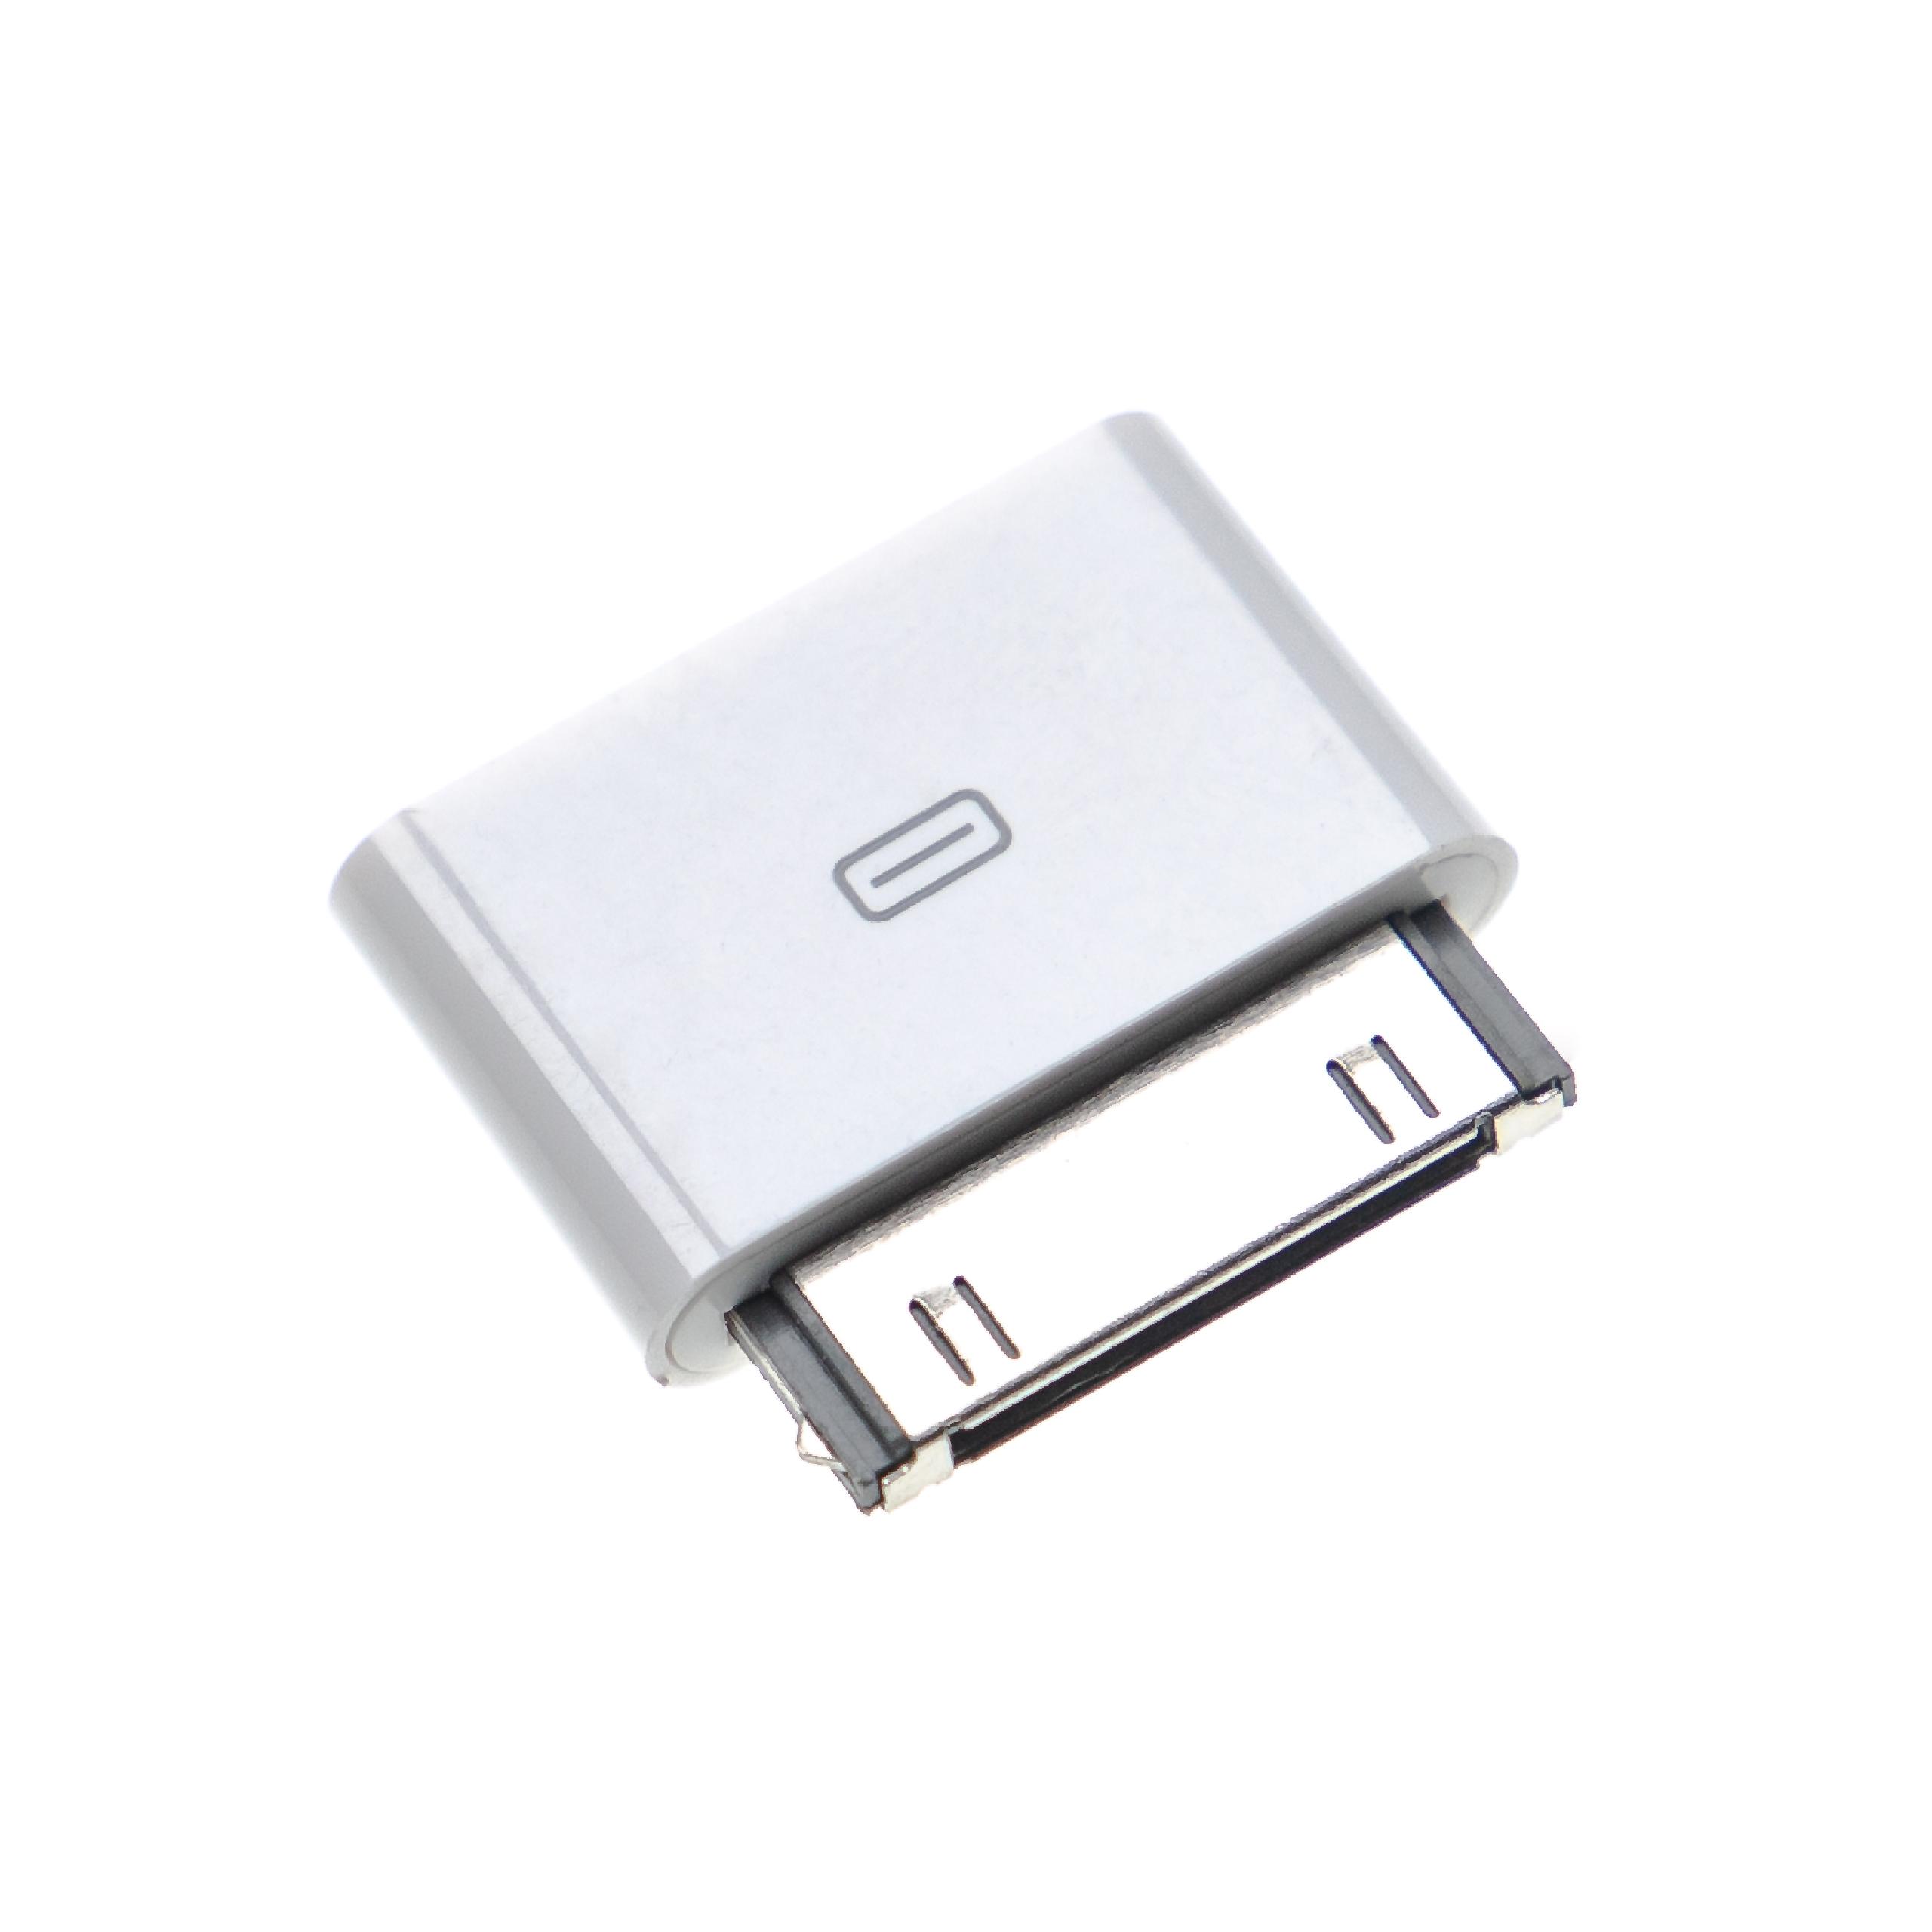 vhbw Adaptador compatible con Apple iPhone móvil, smartphone - Adaptador USB Micro a conector 30 pines